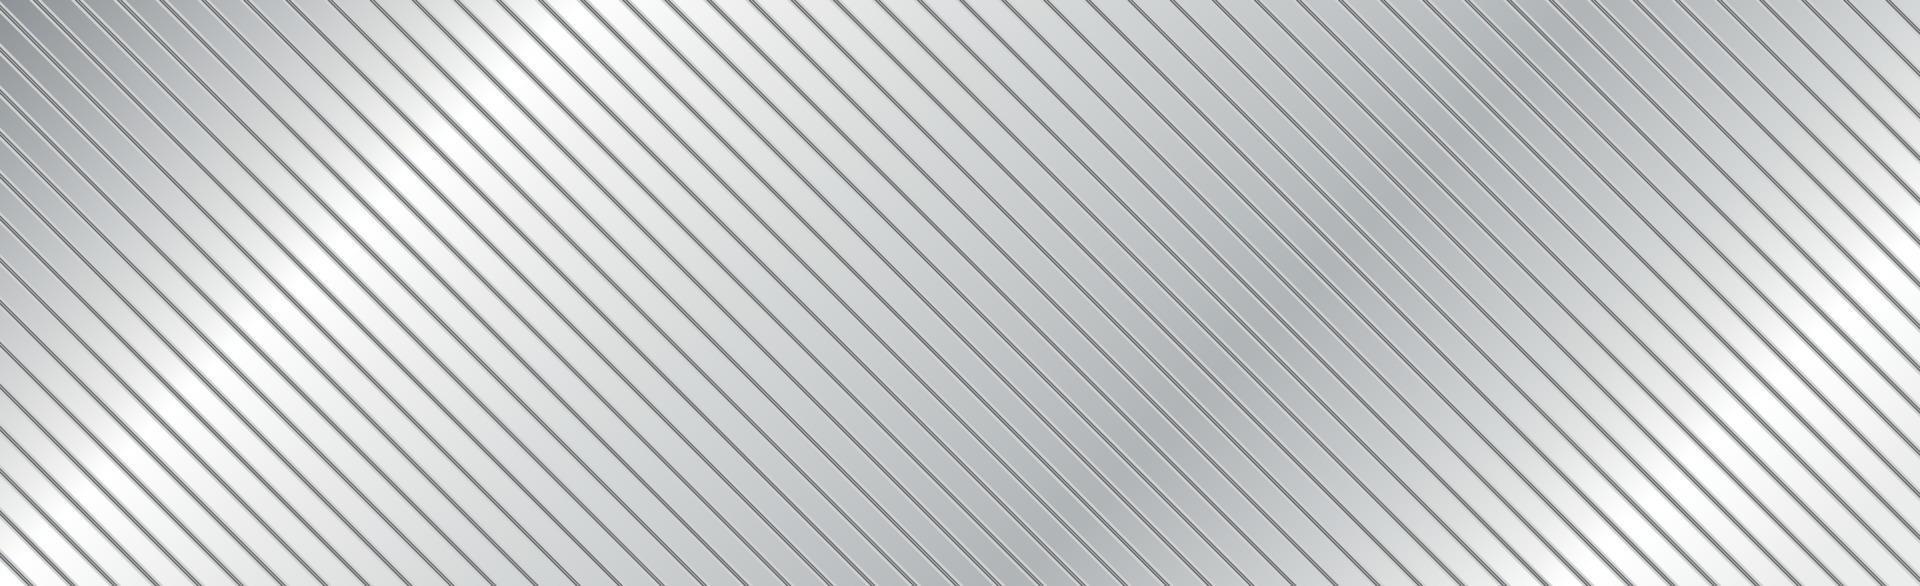 fond de texture en acier métallique abstrait panoramique lignes inclinées - vecteur